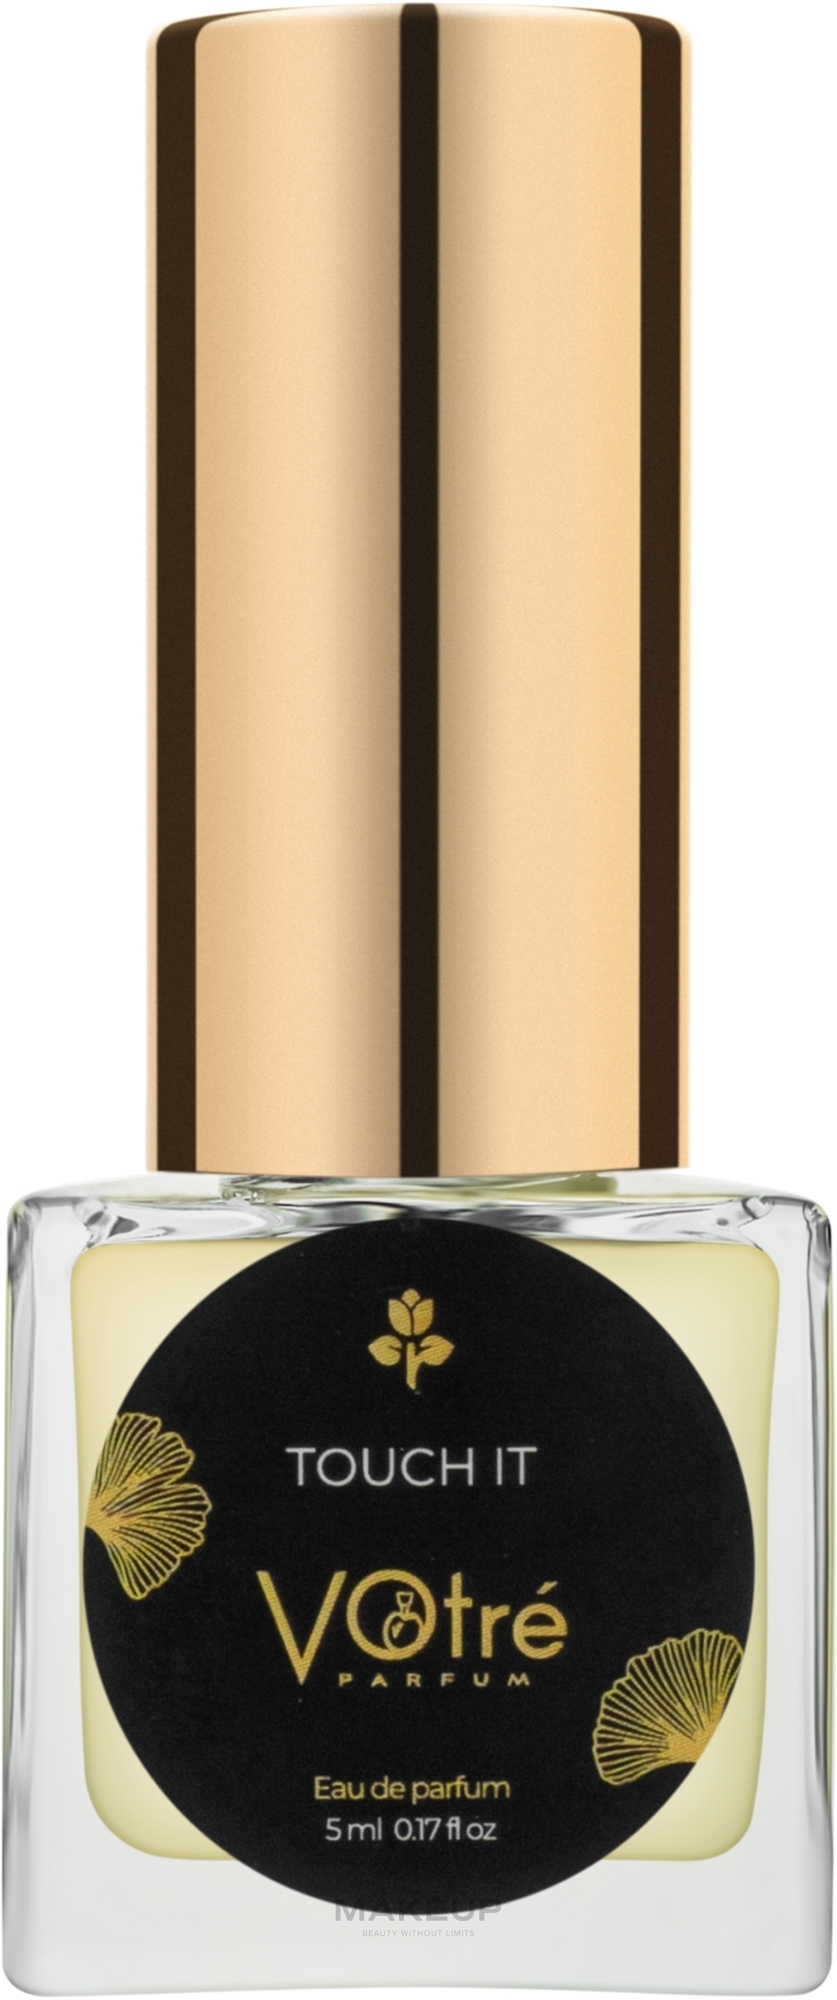 Votre Parfum Touch It - Парфюмированная вода (мини) — фото 5ml